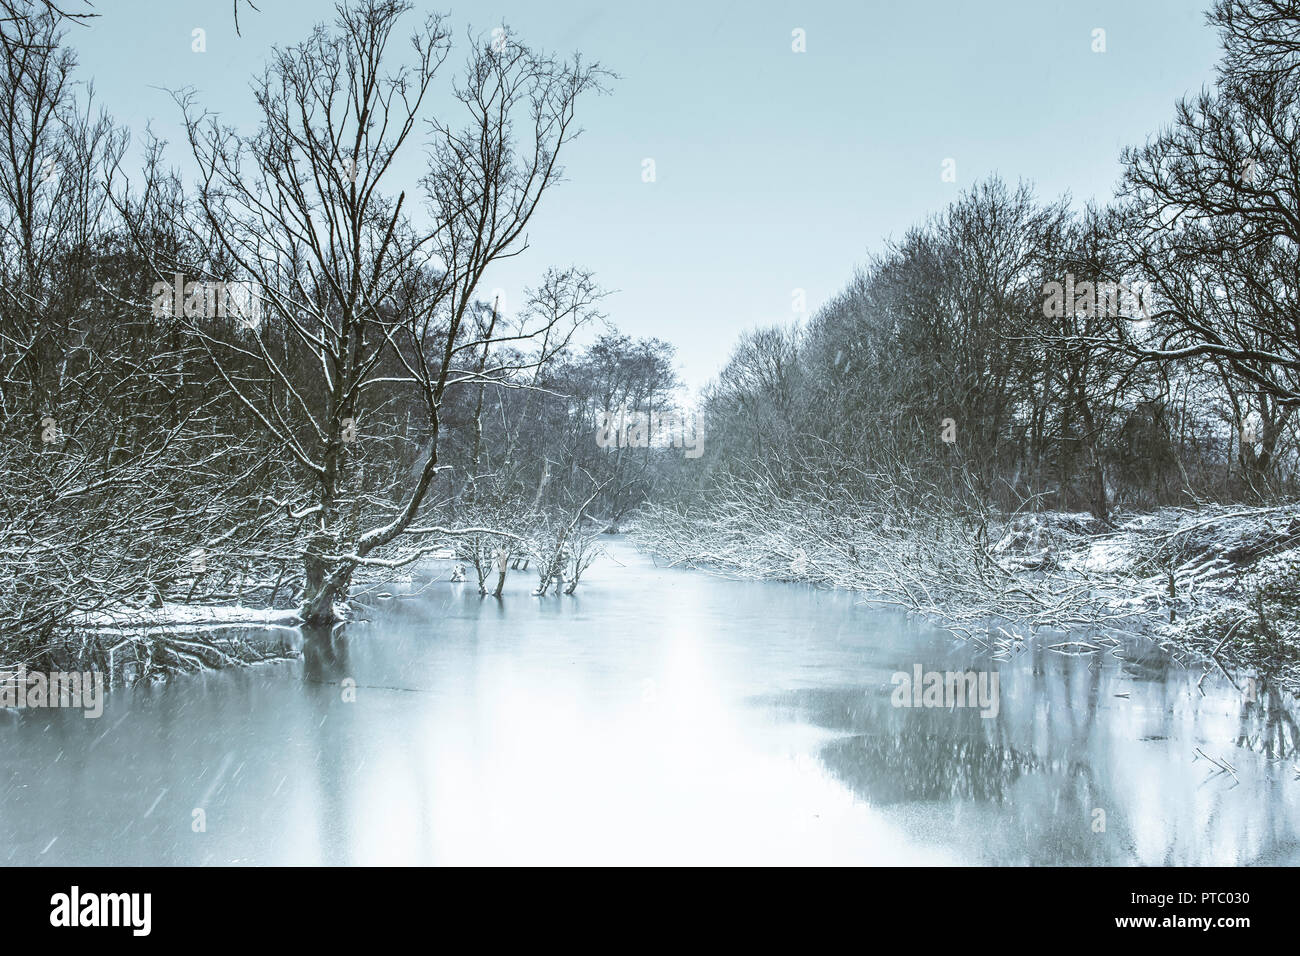 País de las maravillas invernal paisaje.lago congelado en british woodland y caída de nieve.hielo que cubre la superficie del estanque en el desierto.bosque nevado paisaje.estanque congelado. Foto de stock